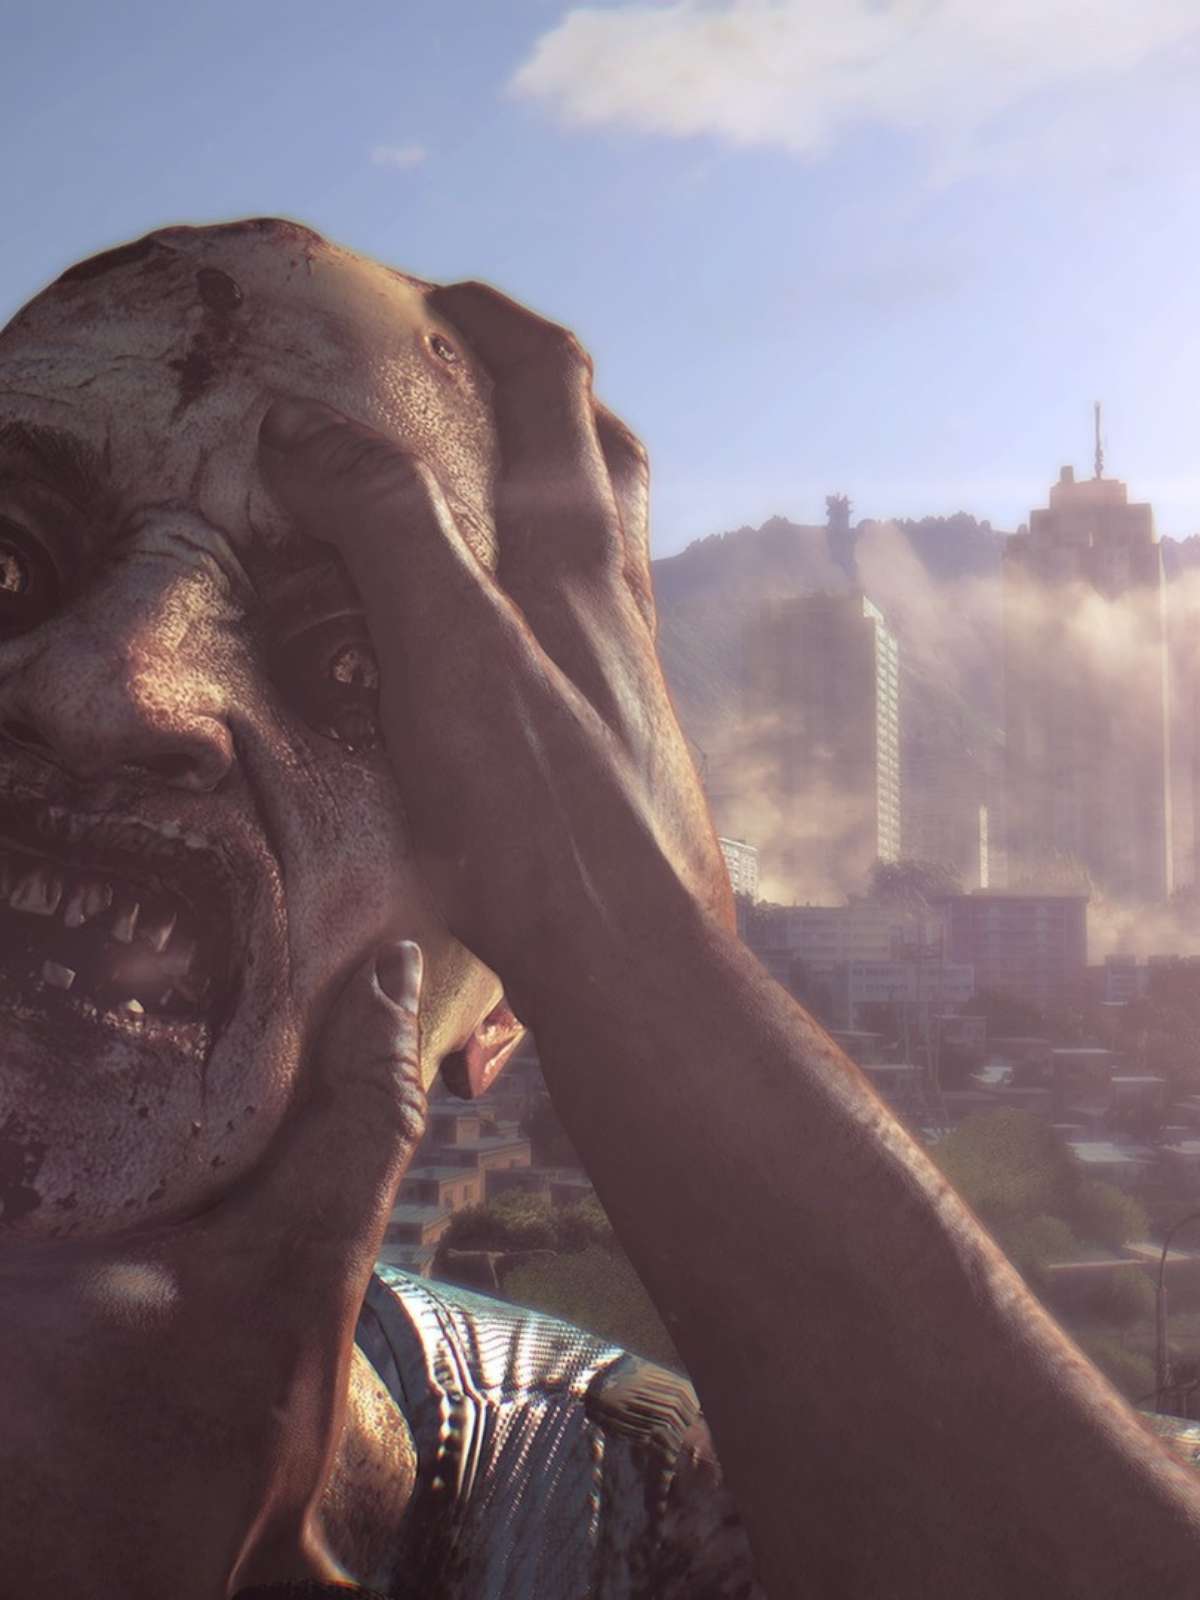 De The Walking Dead: os 10 melhores jogos de zumbis pra você